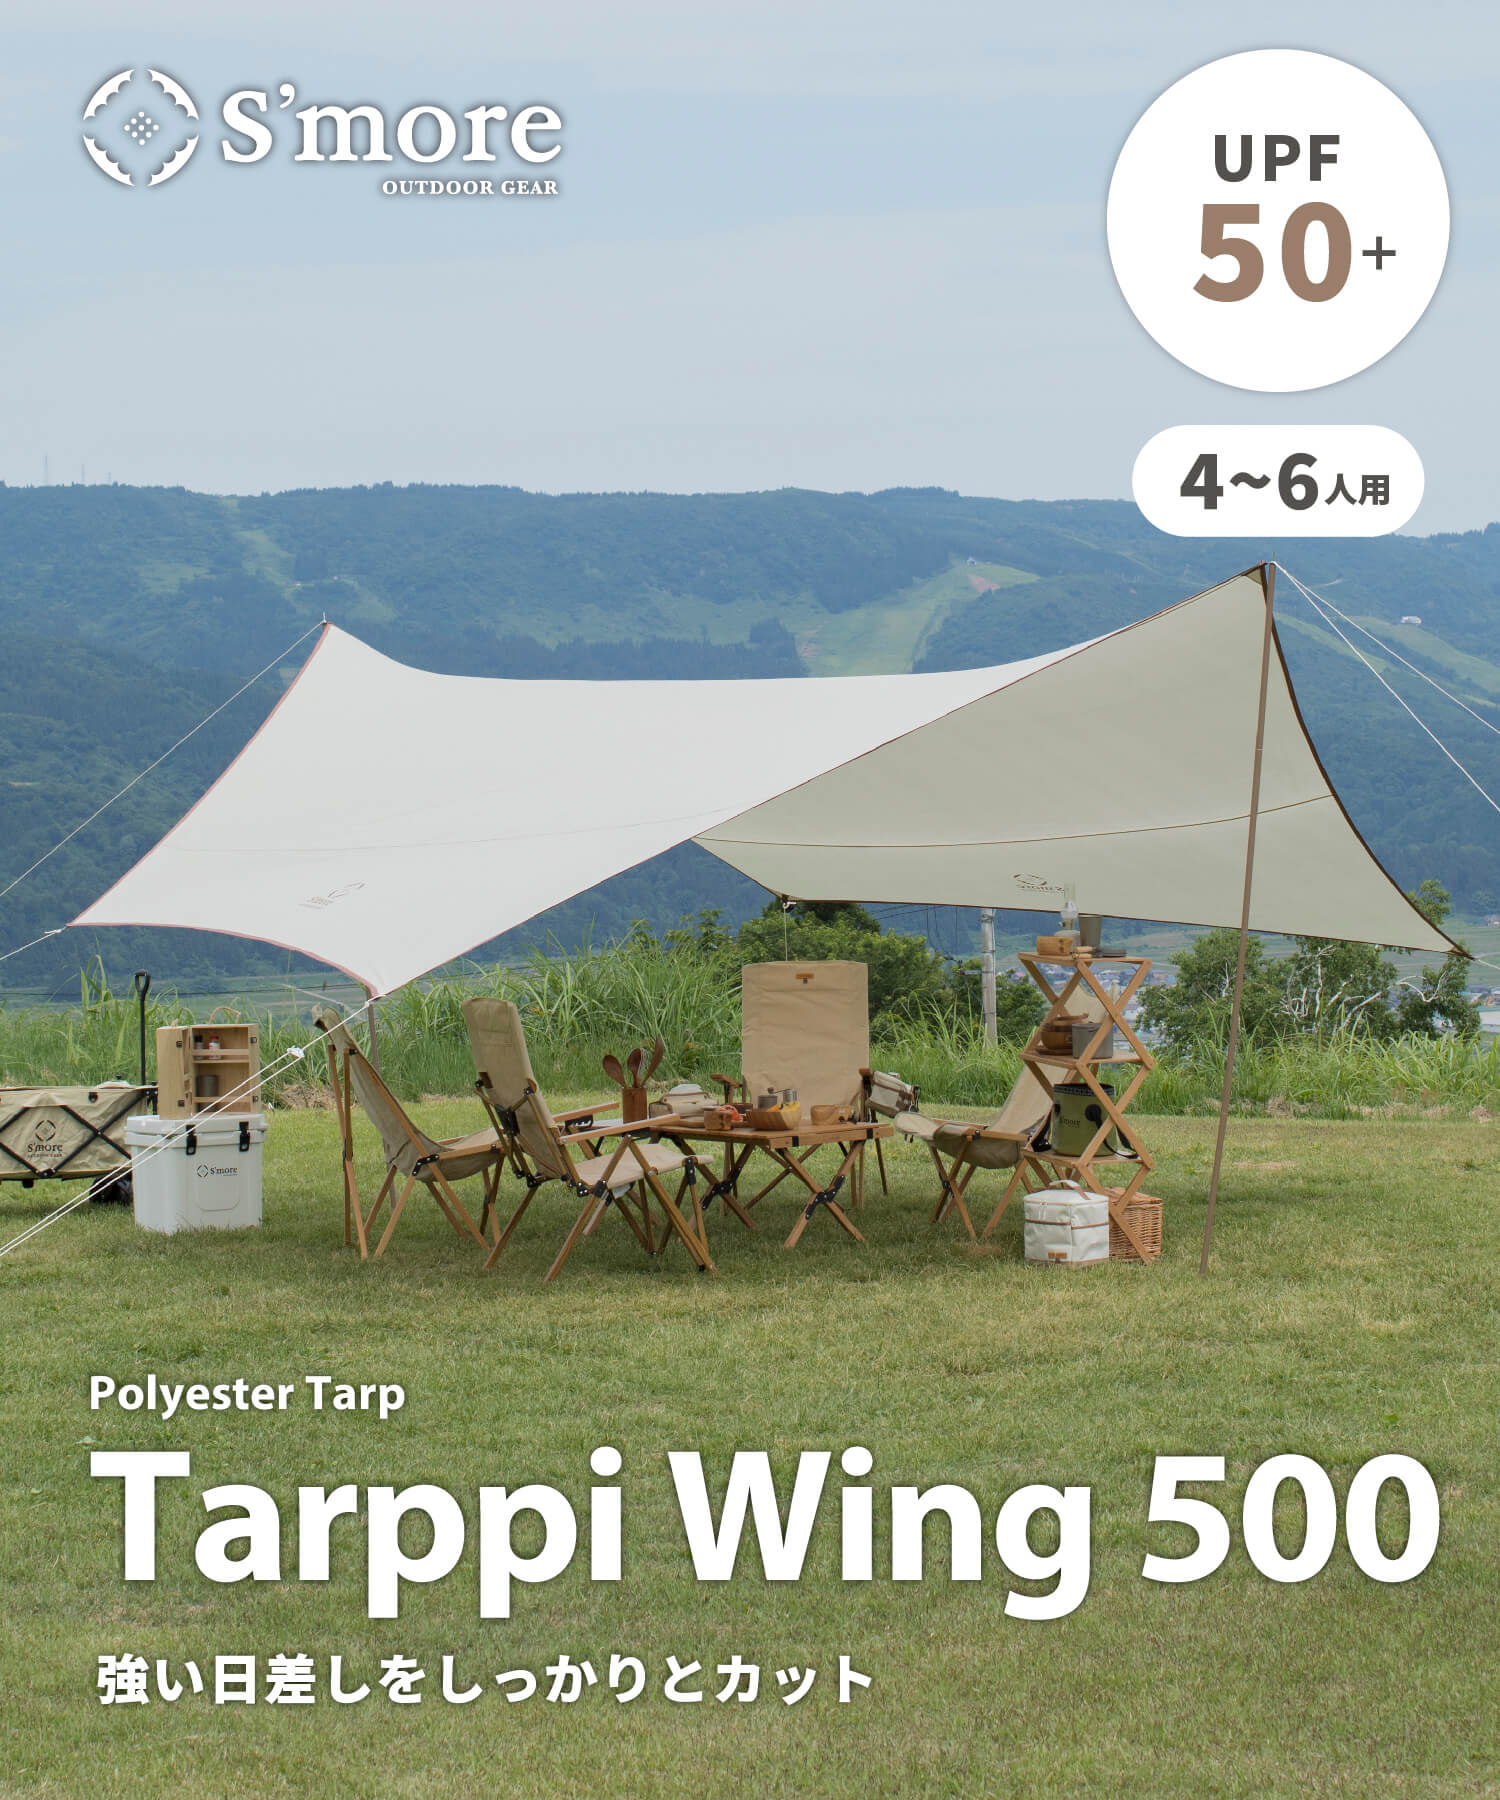 Tarppi Wing 500 】タープウイング500 – S'more